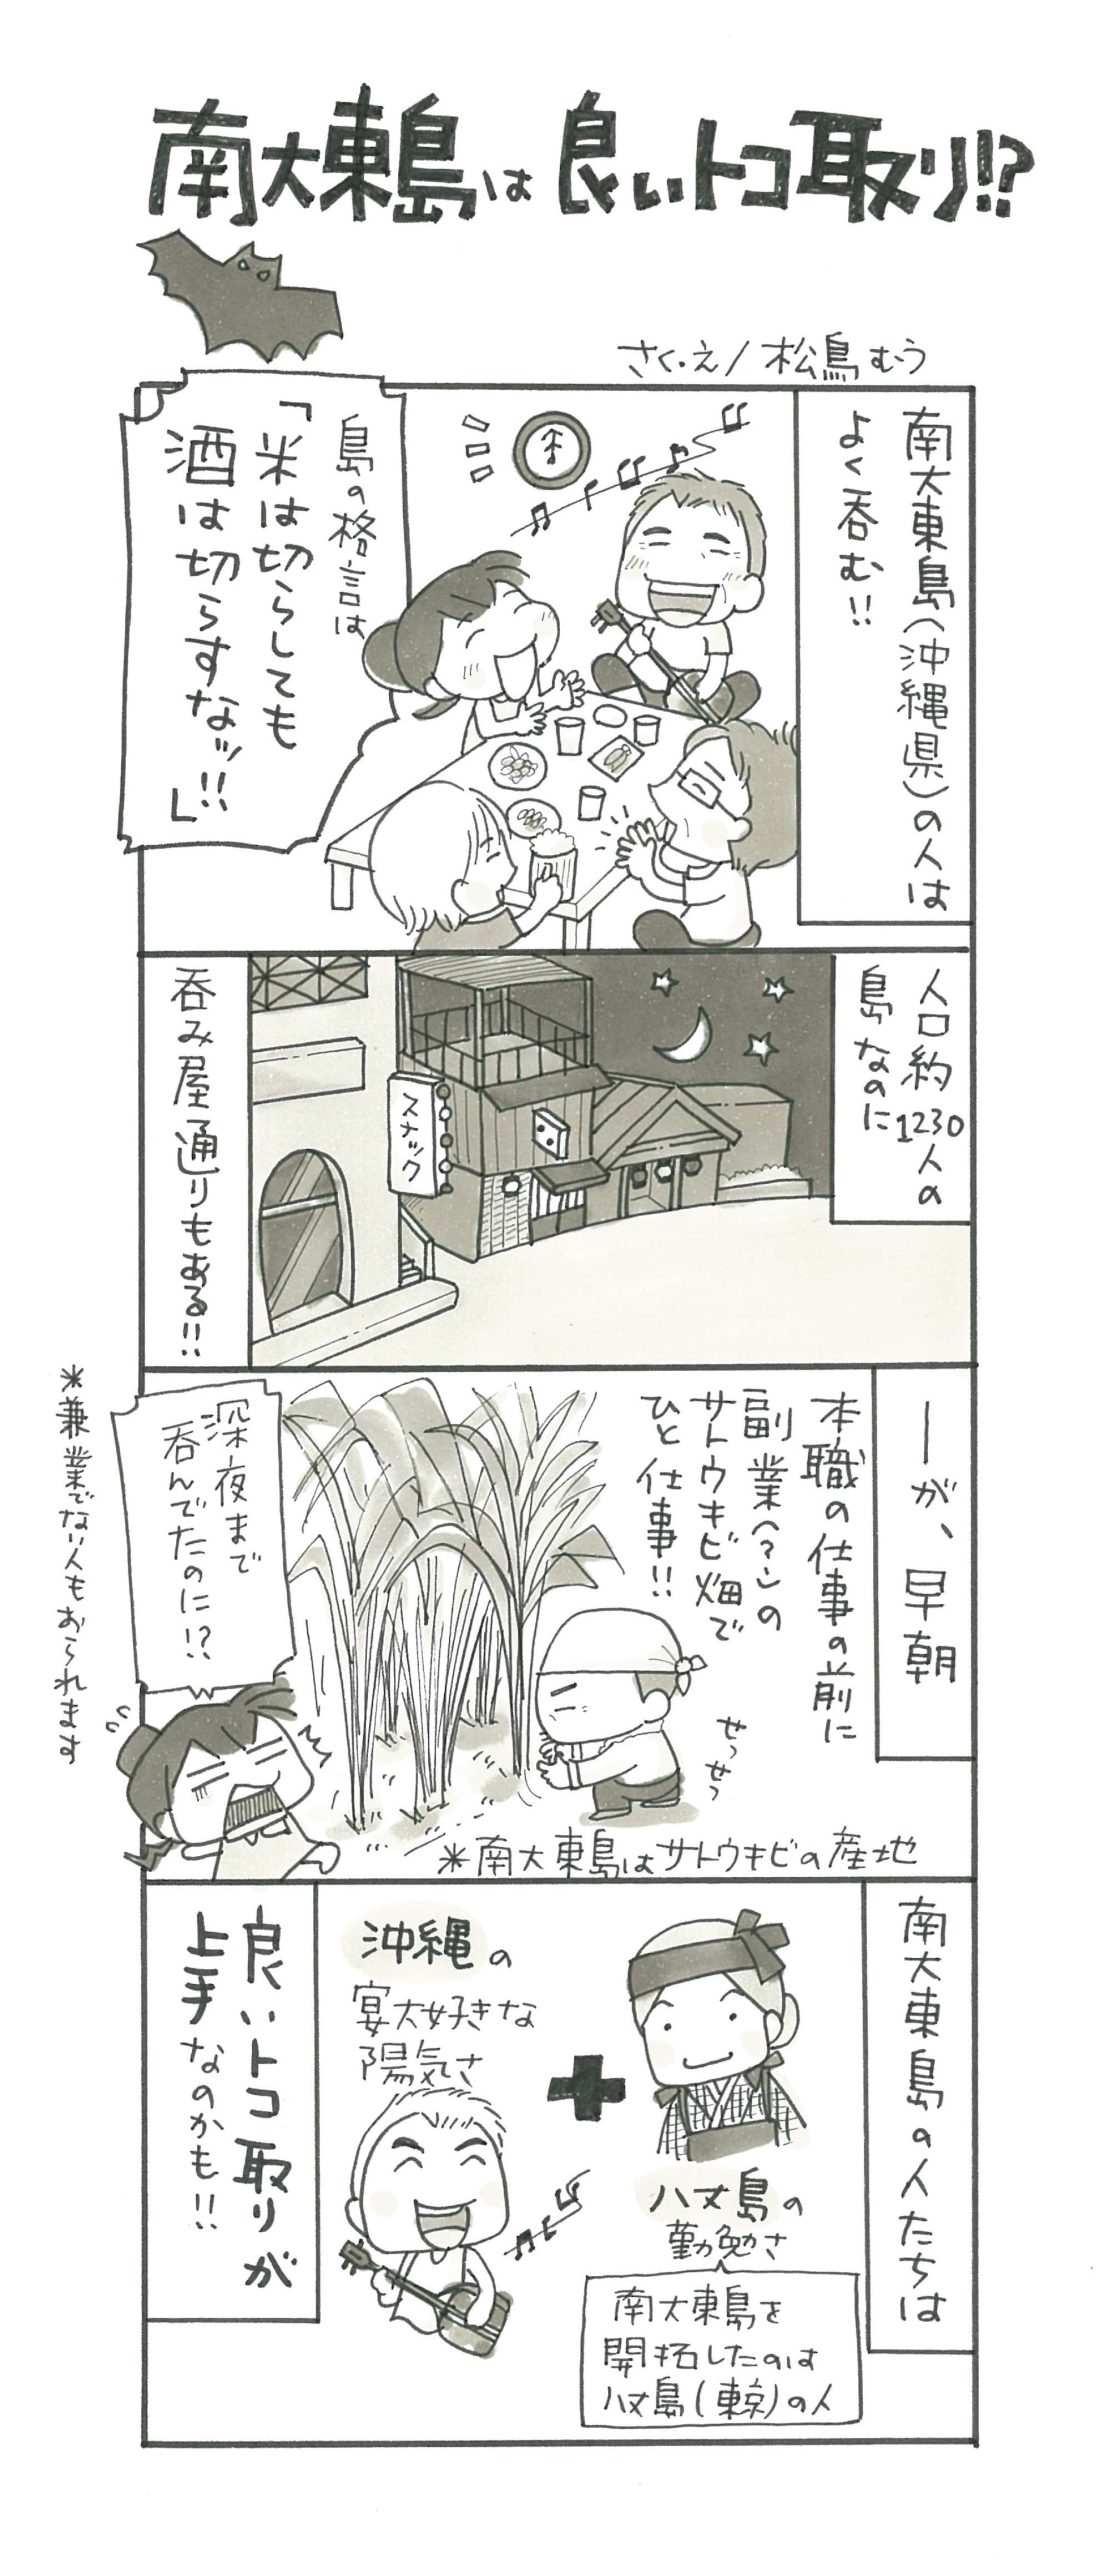 4コマ漫画 島旅是好日 23 南大東島は良いトコ取り 寄稿 松鳥むう Ritokei 離島経済新聞